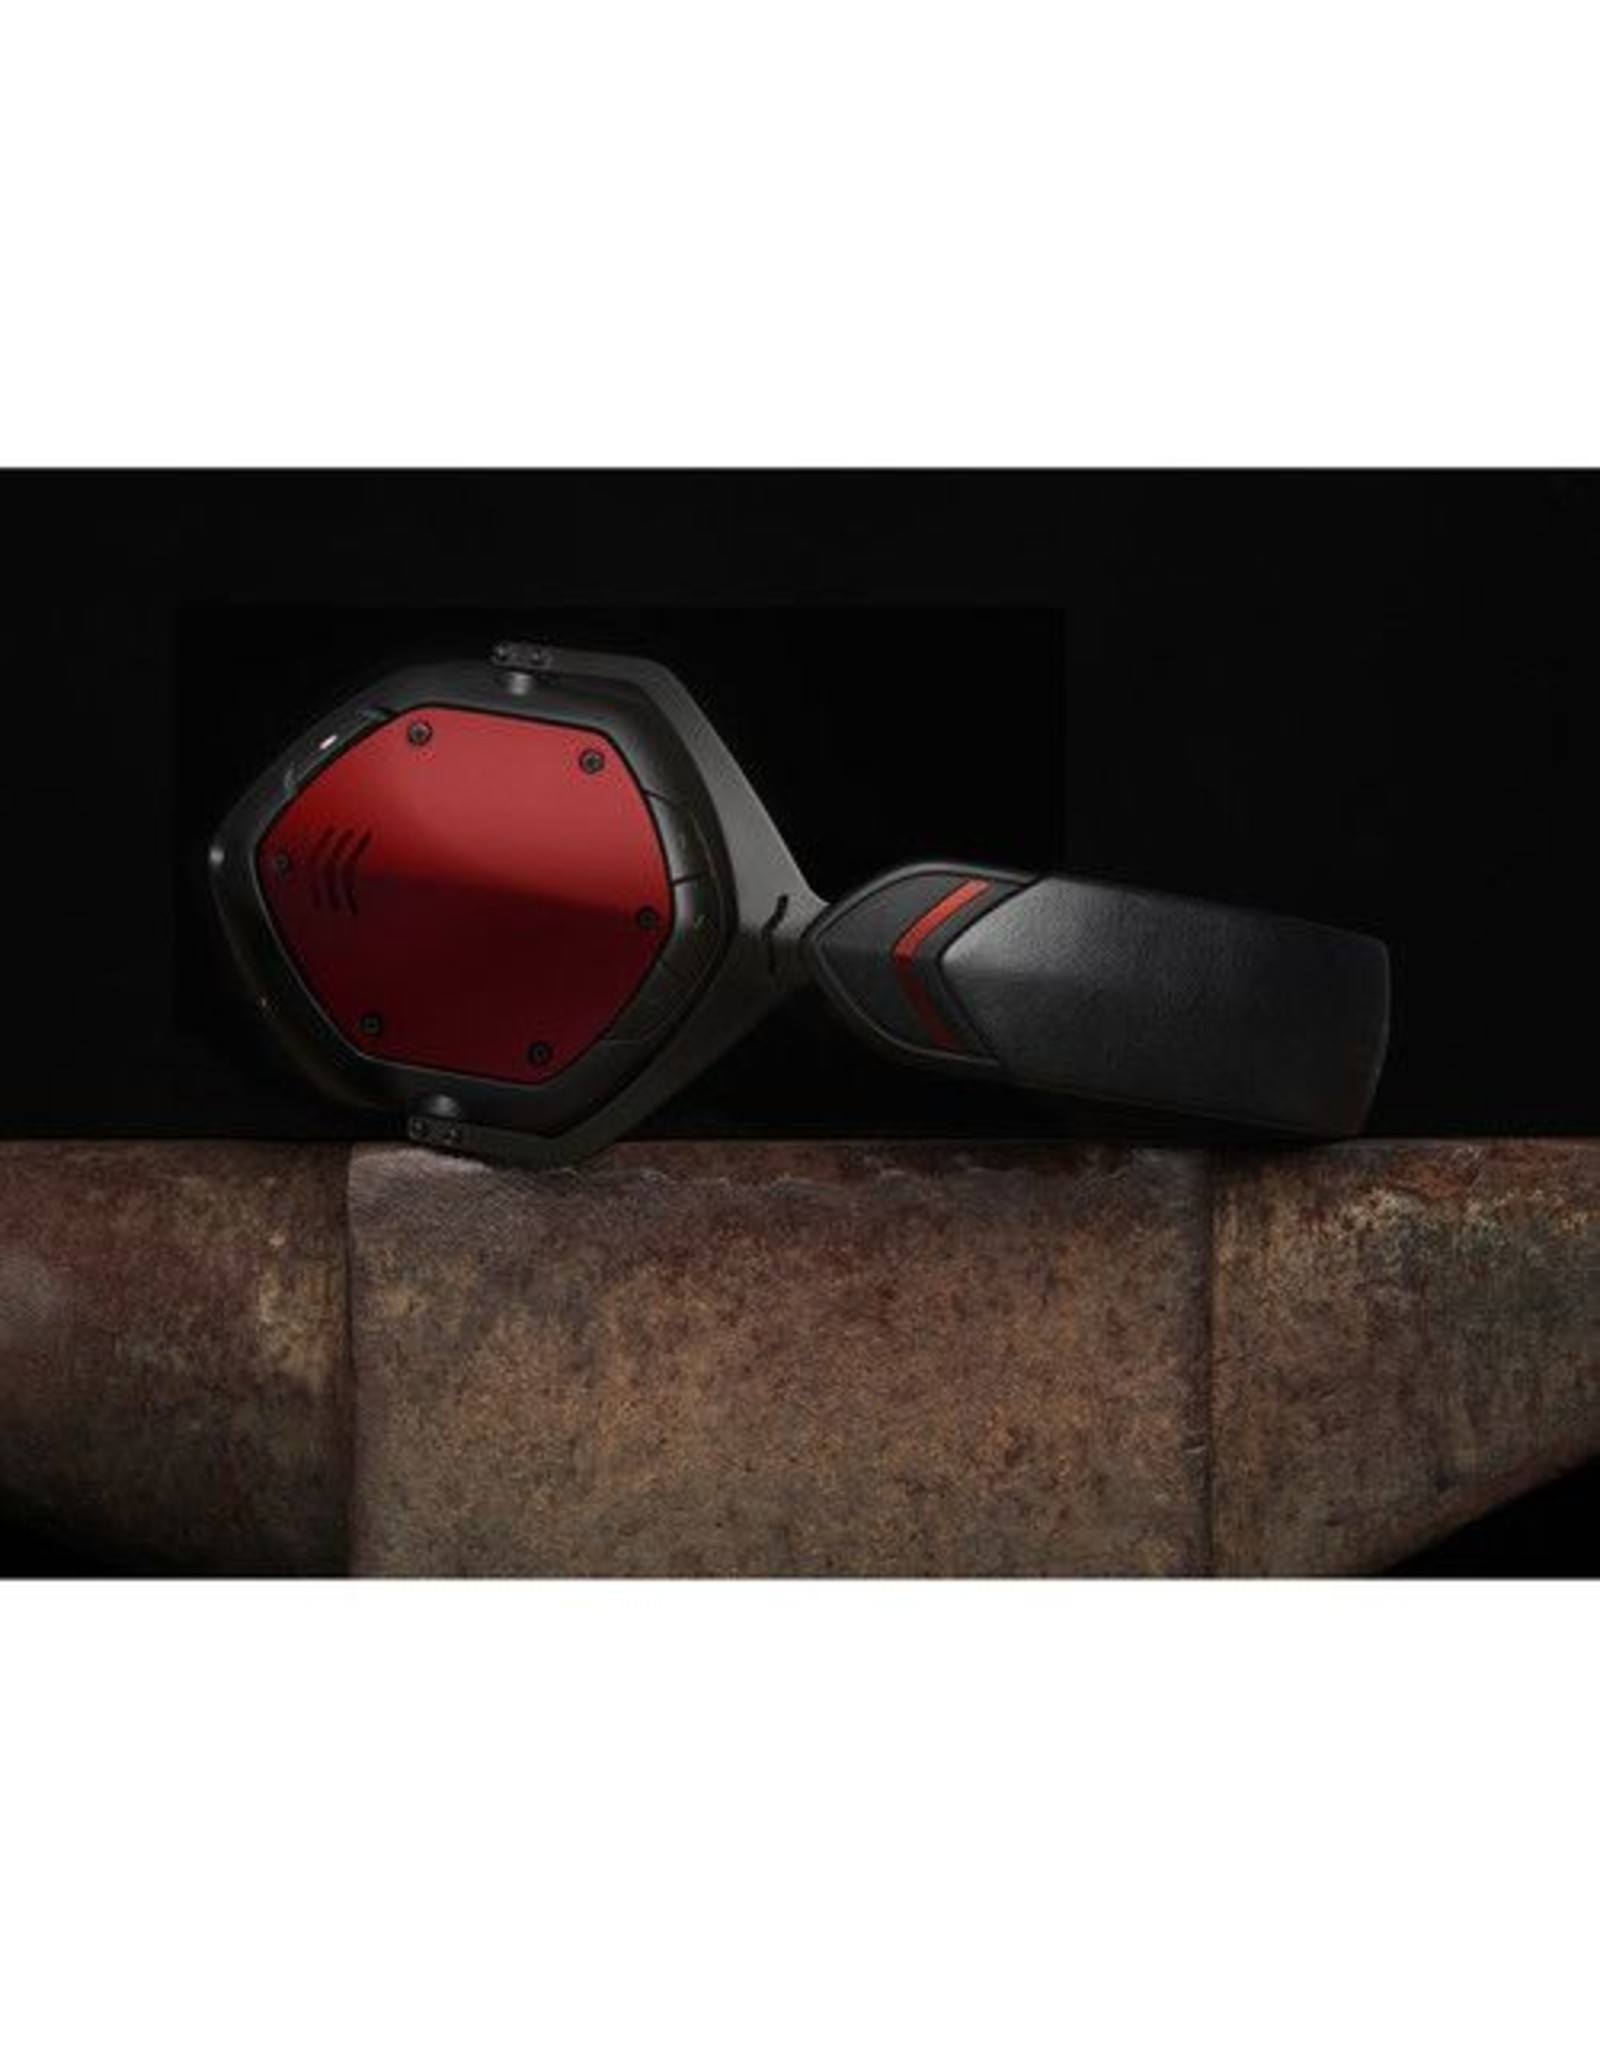 V-MODA  XFBT Crossfade Wireless Headphones (Rouge)